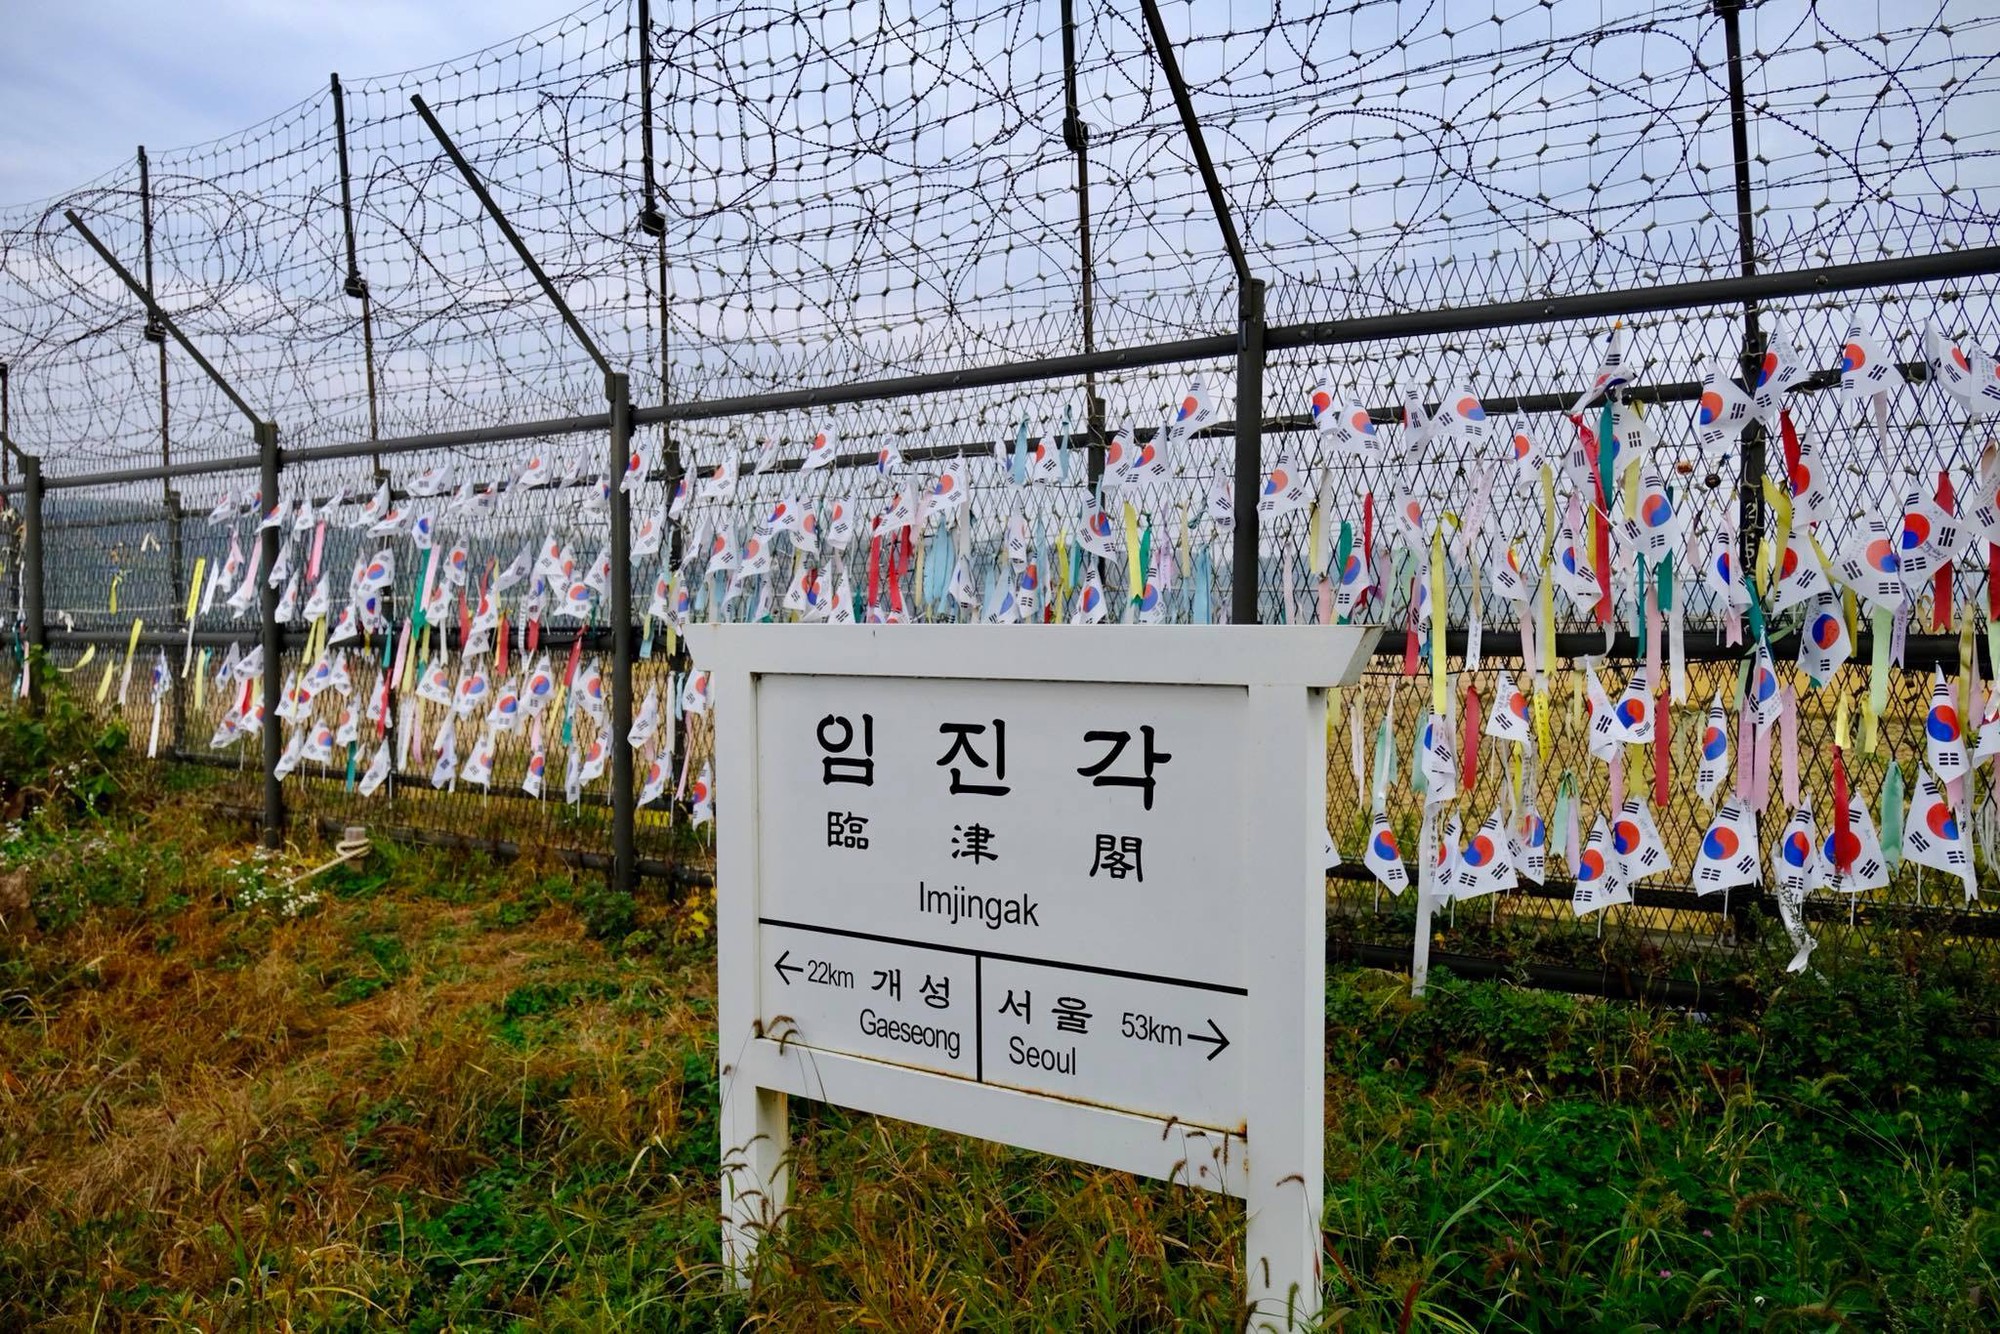 [PHOTO ESSAY] Thù địch và hy vọng ở DMZ liên Triều nhìn từ hai phía qua ống kính người Việt - Ảnh 19.